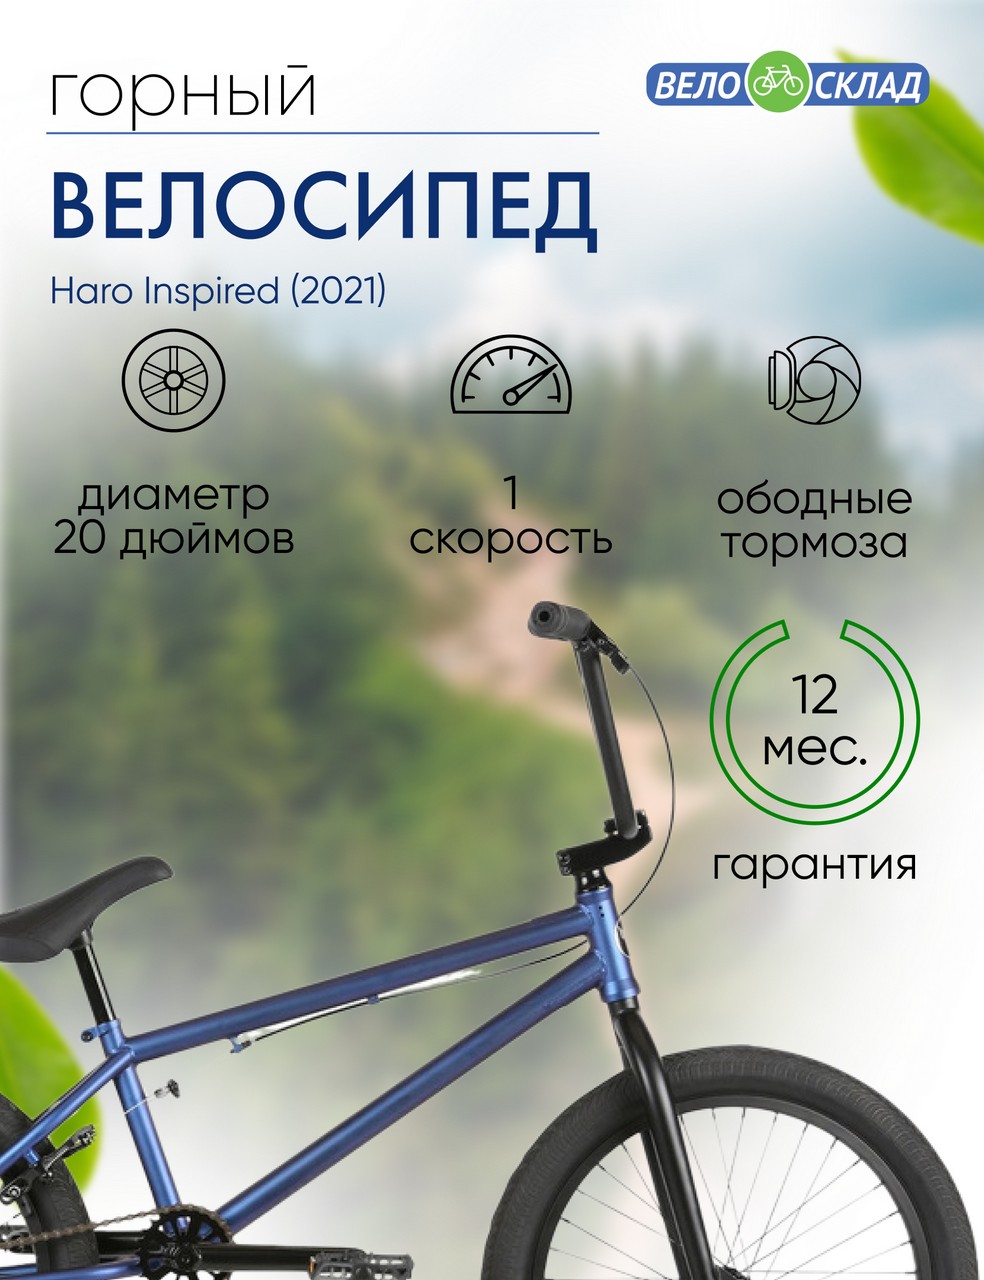 Экстремальный велосипед Haro Inspired, год 2021, цвет Зеленый-Голубой, ростовка 20.5